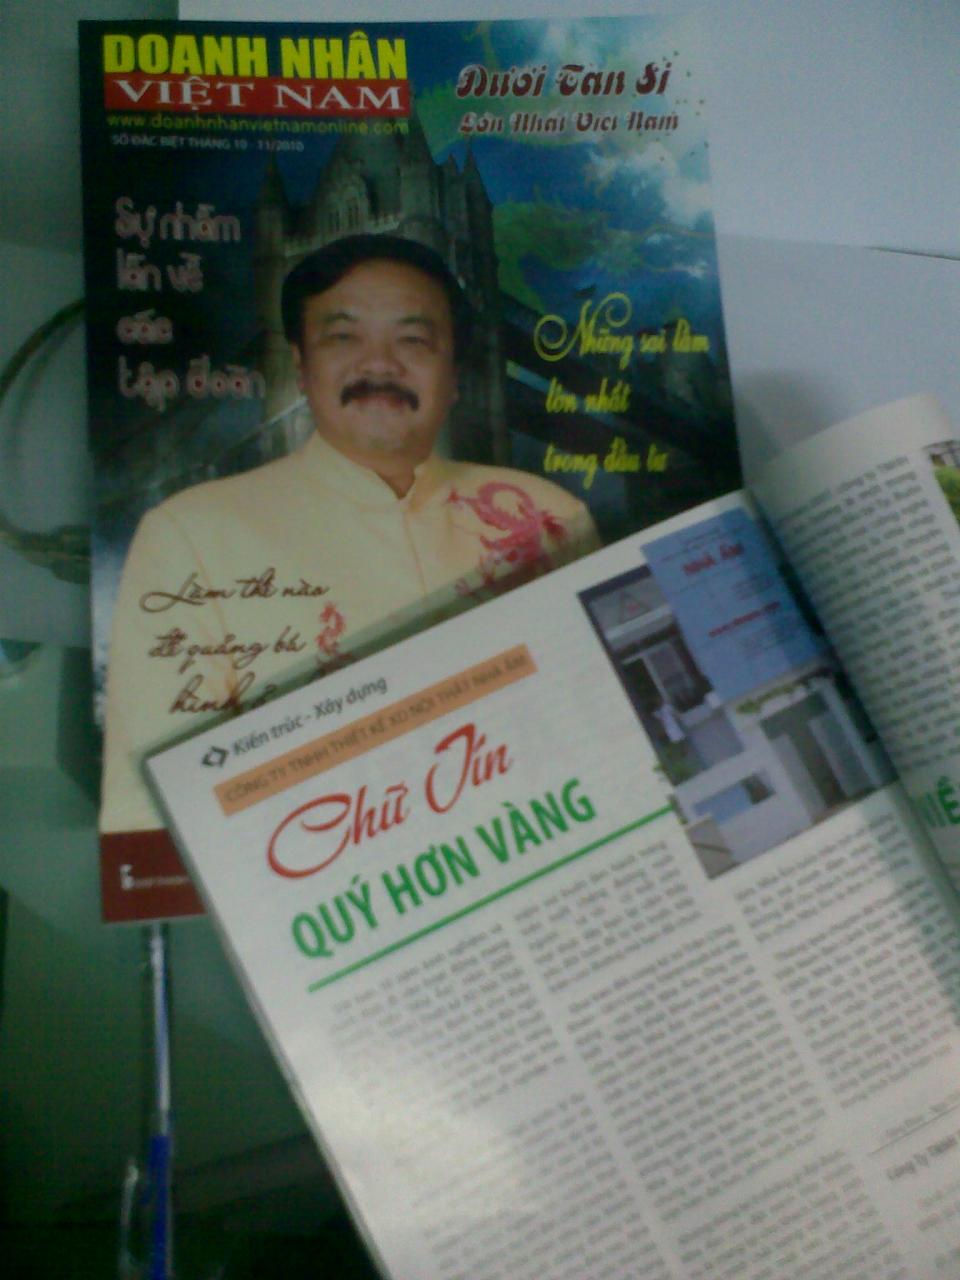 NHÀ ẤM trả lời phóng viên tạp chí Doanh nhân Việt Nam nhân chuyên đề ngày hội doanh nhân 13/10/2010